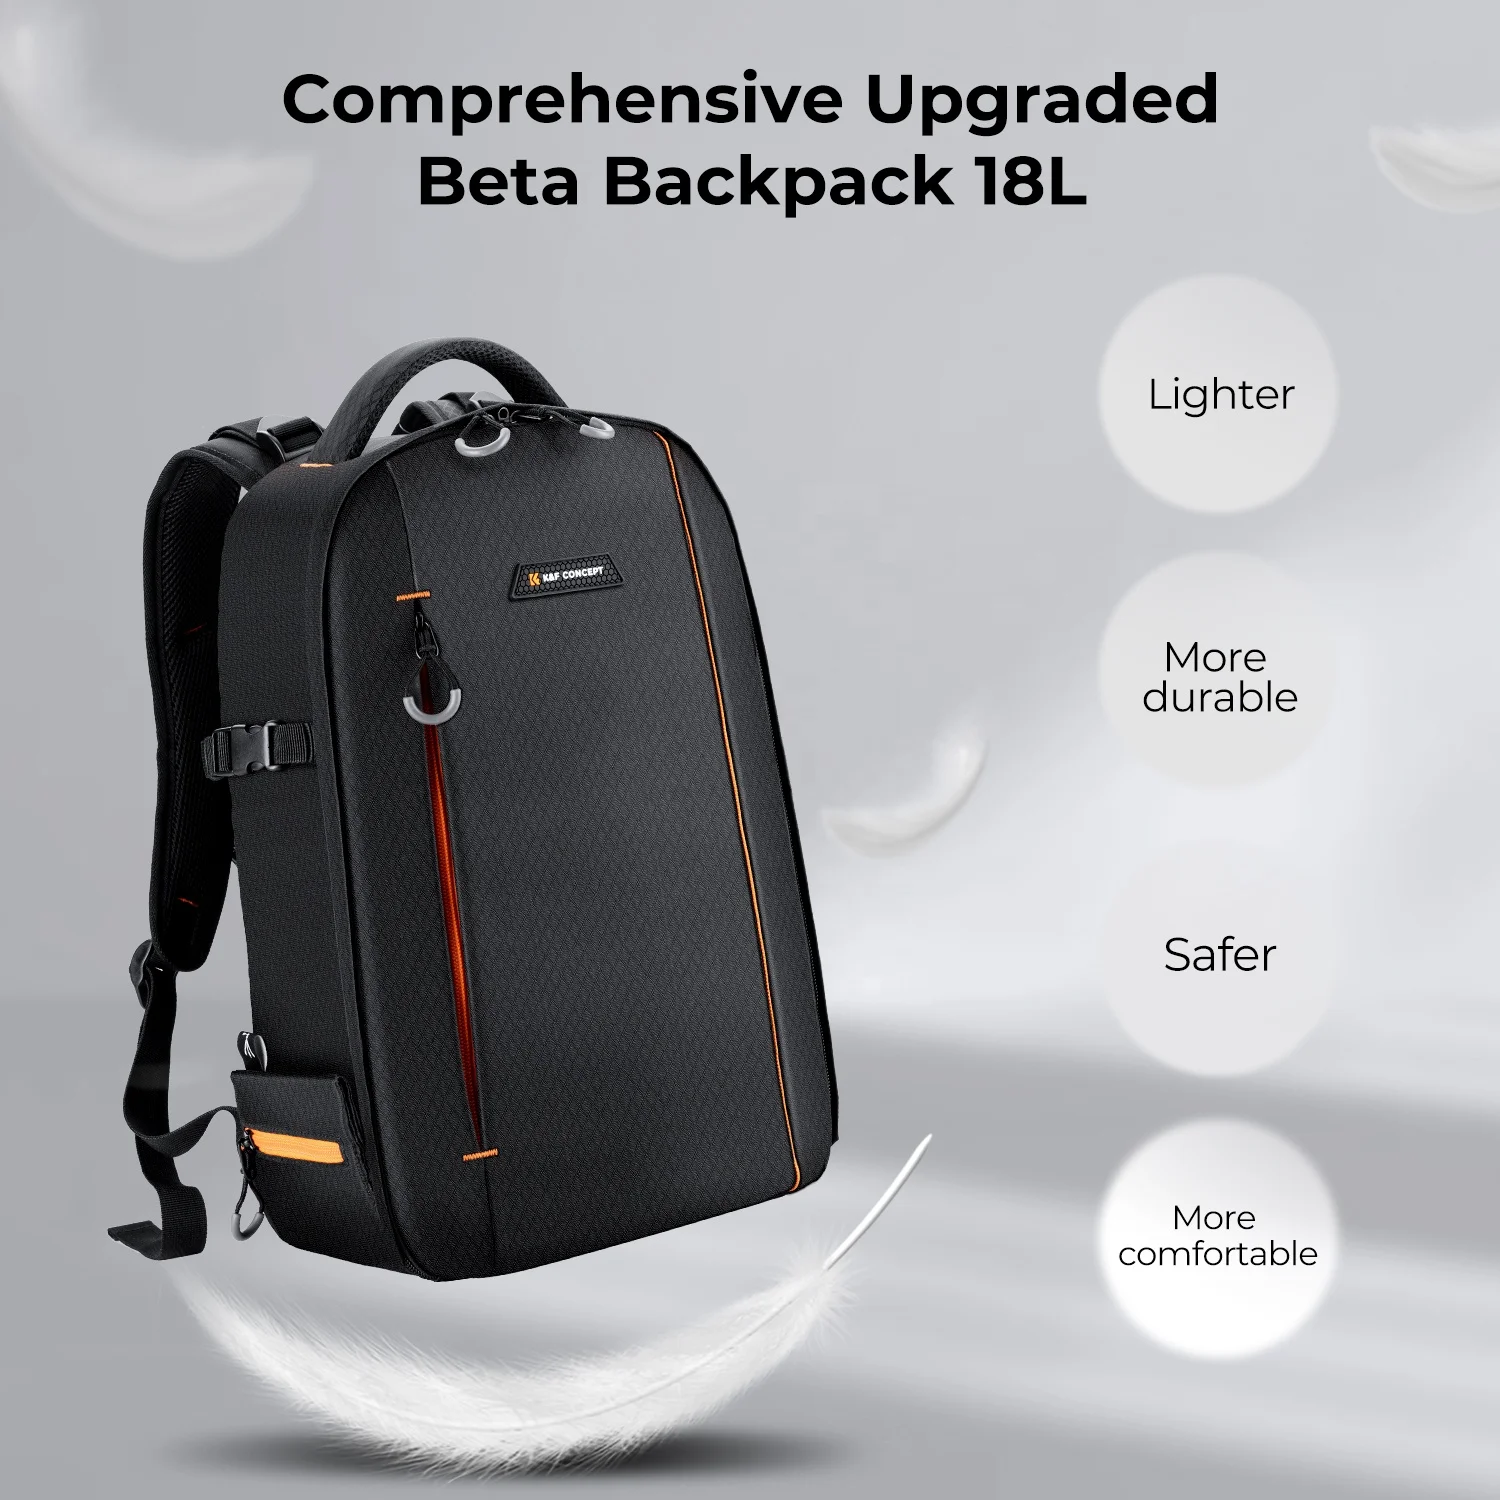 K&F Concept DSLR Camera Backpack Waterproof camera bag for SLR/DSLR cameras lenses and accessories in black